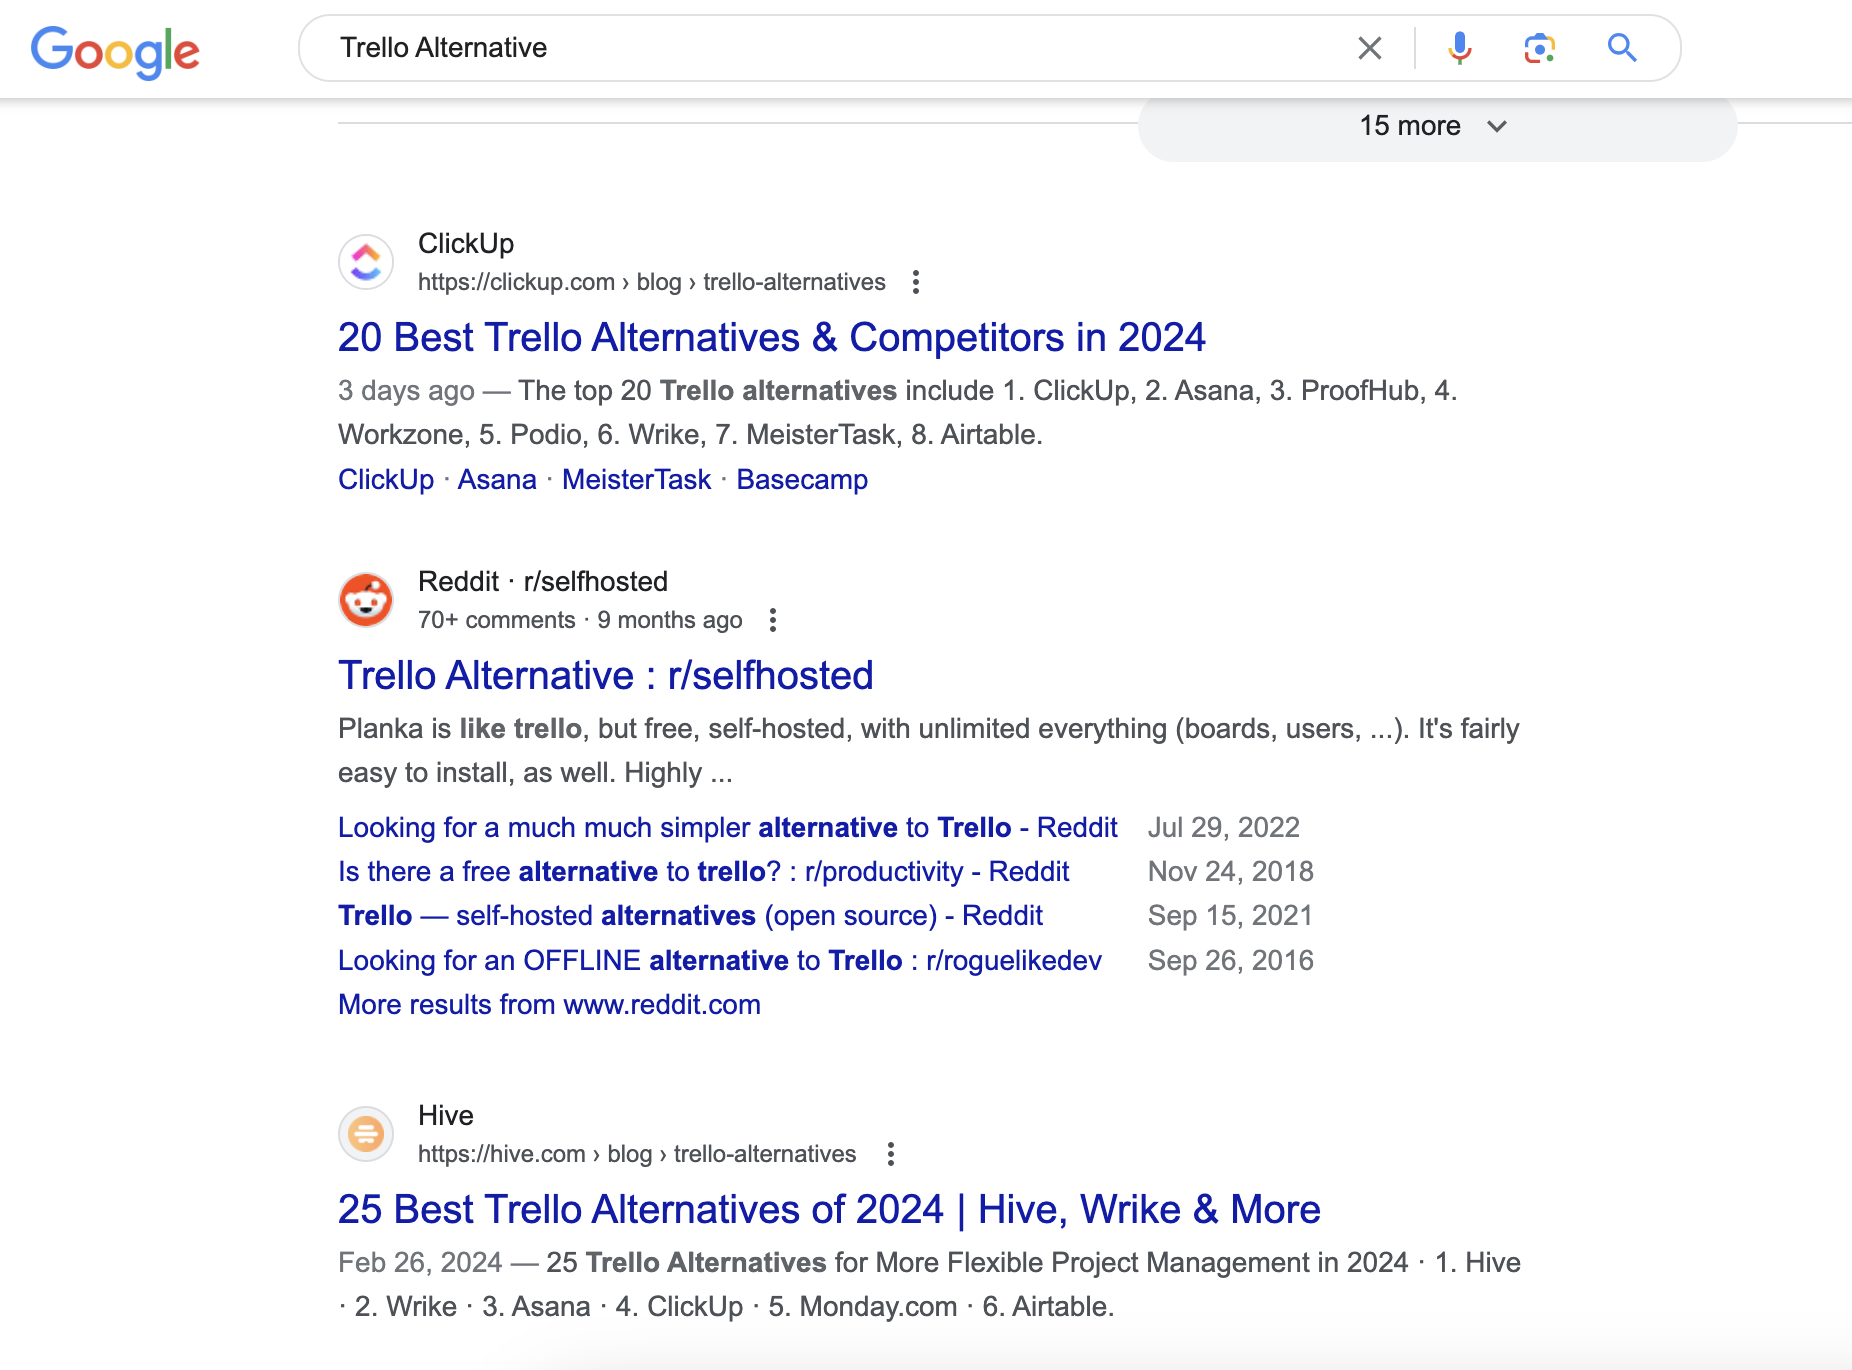 Пост на субреддите об альтернативах Trello также занимает видное место в результатах поиска по этому поисковому запросу.